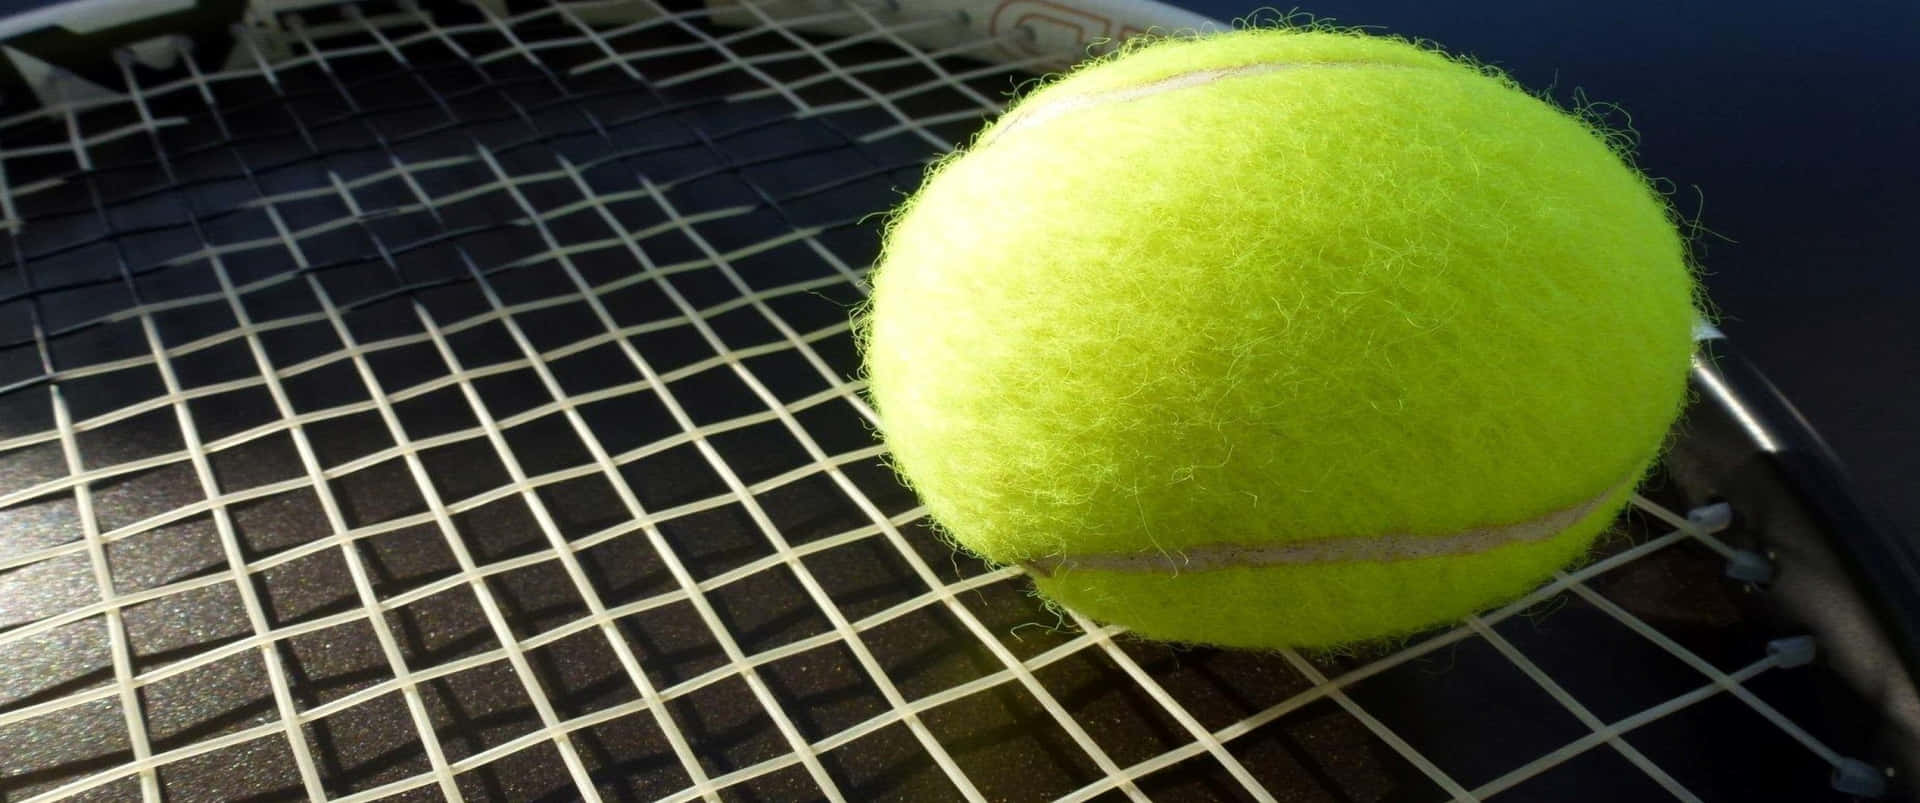 Högupplöst3440x1440p Tennis Bakgrundsbild